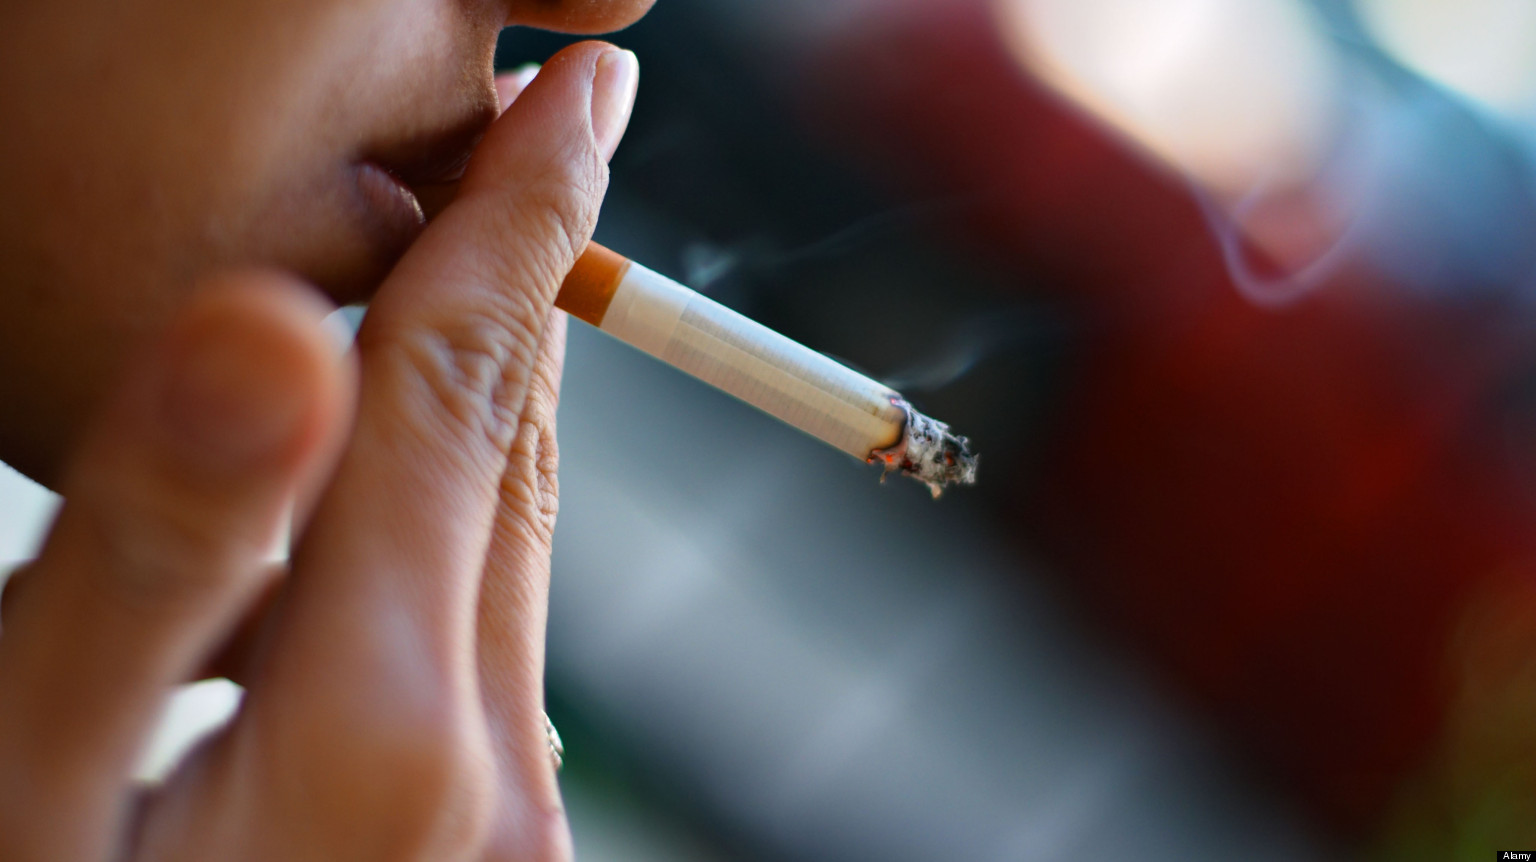 Shqiptarët s’pyesin për çmimin, importojnë mbi 3 mijë ton cigare